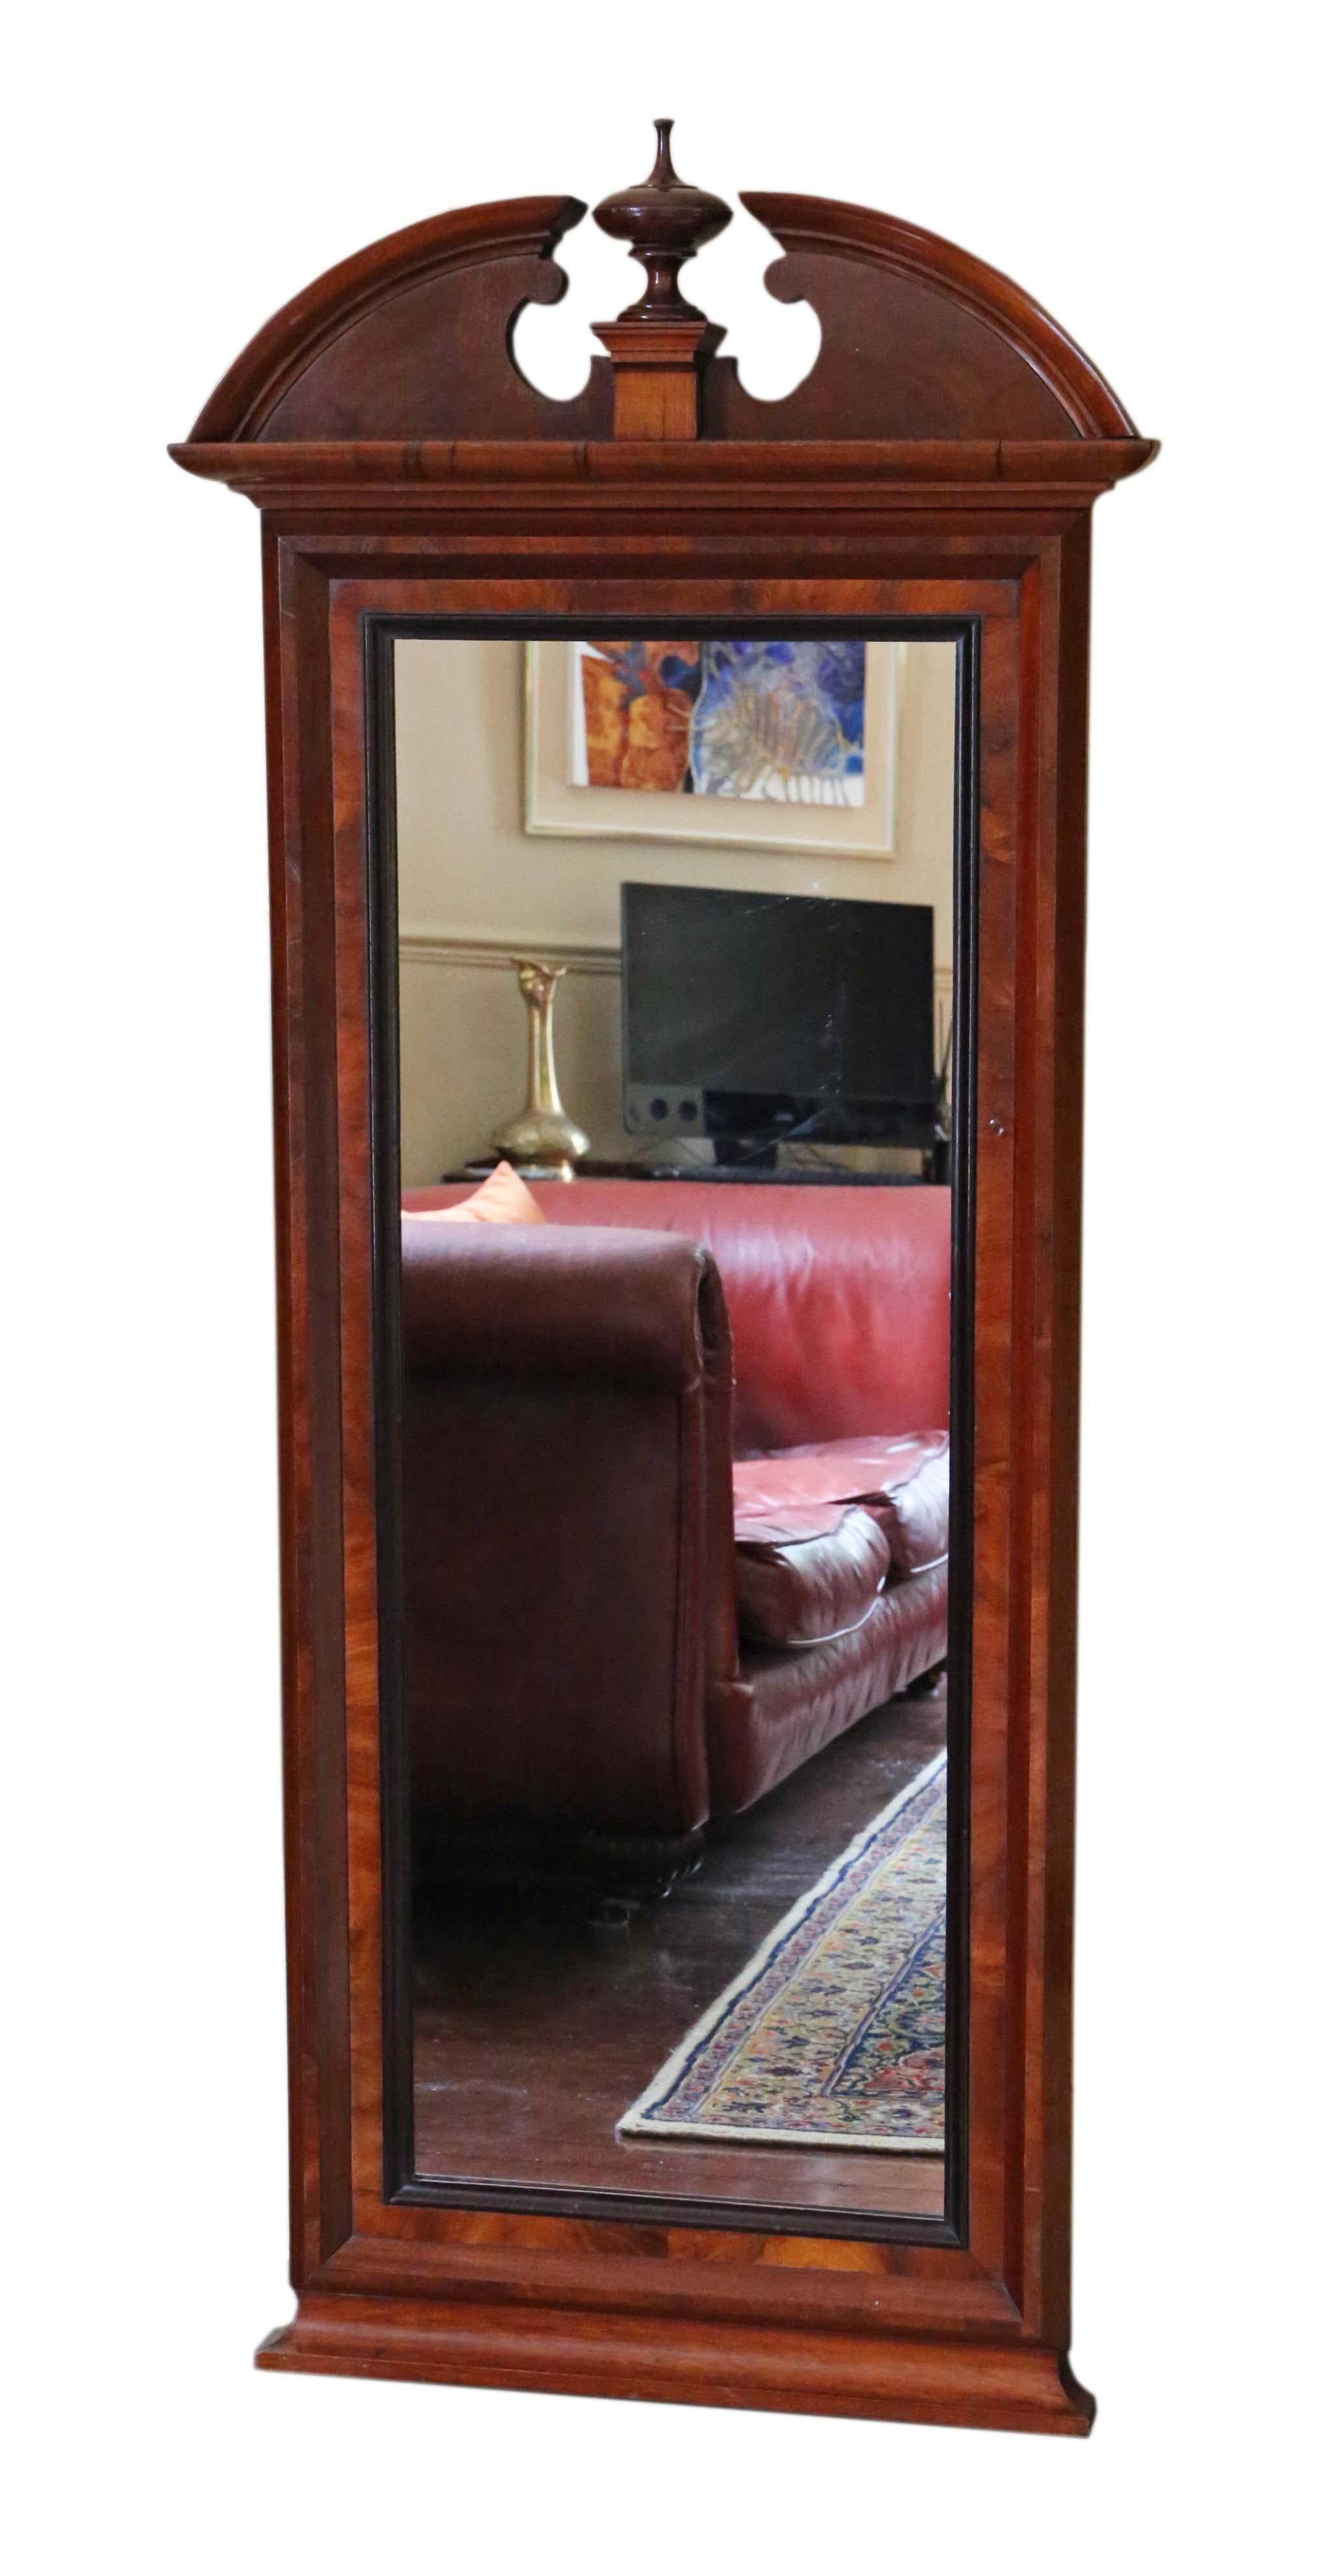 Antiker Wandspiegel aus Mahagoni in voller Höhe, 19. Jahrhundert. Reizvoller Charme und Eleganz.

Dies ist ein schöner, seltener Spiegel. Toller Rahmen in gutem Zustand... sieht toll aus. Überwiegend Mahagonifurnier auf